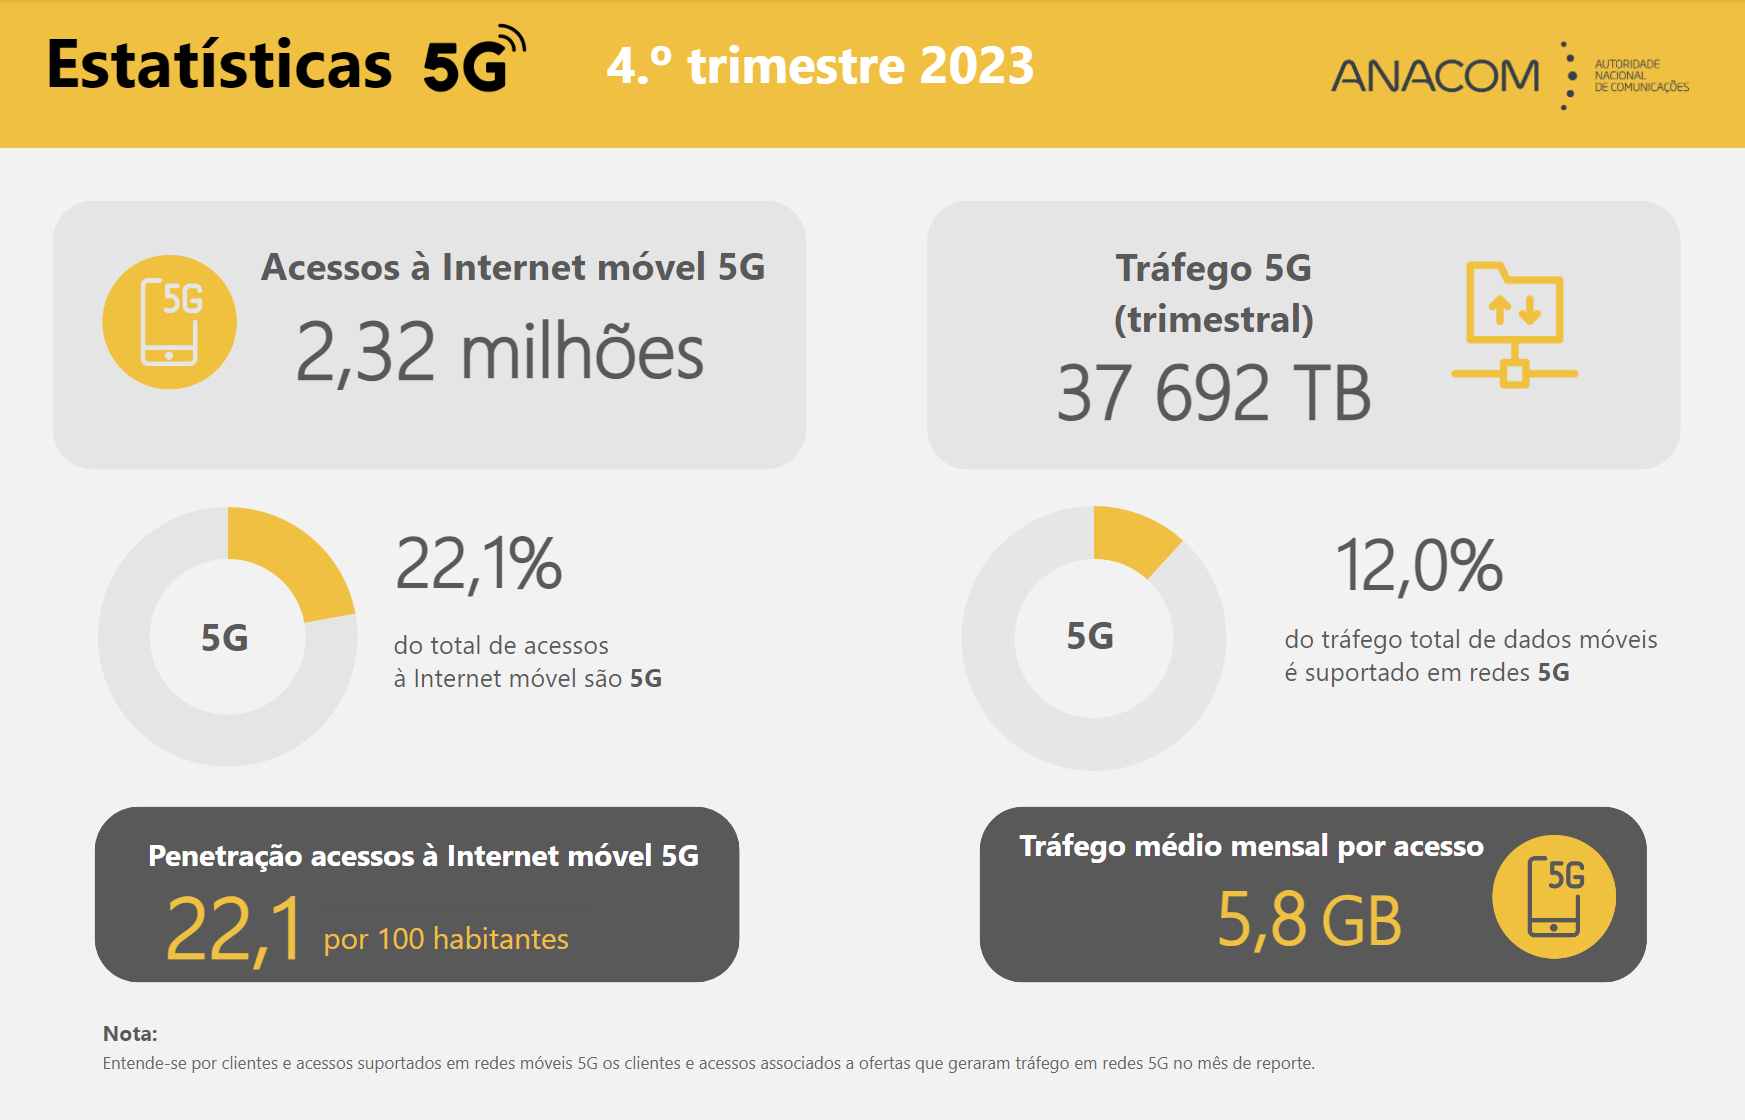 Durante o 4.º trimestre de 2023, o tráfego total nas redes 5G atingiu 38 mil TB, correspondendo a uma média mensal de 6 GB por utilizador de Internet móvel 5G.